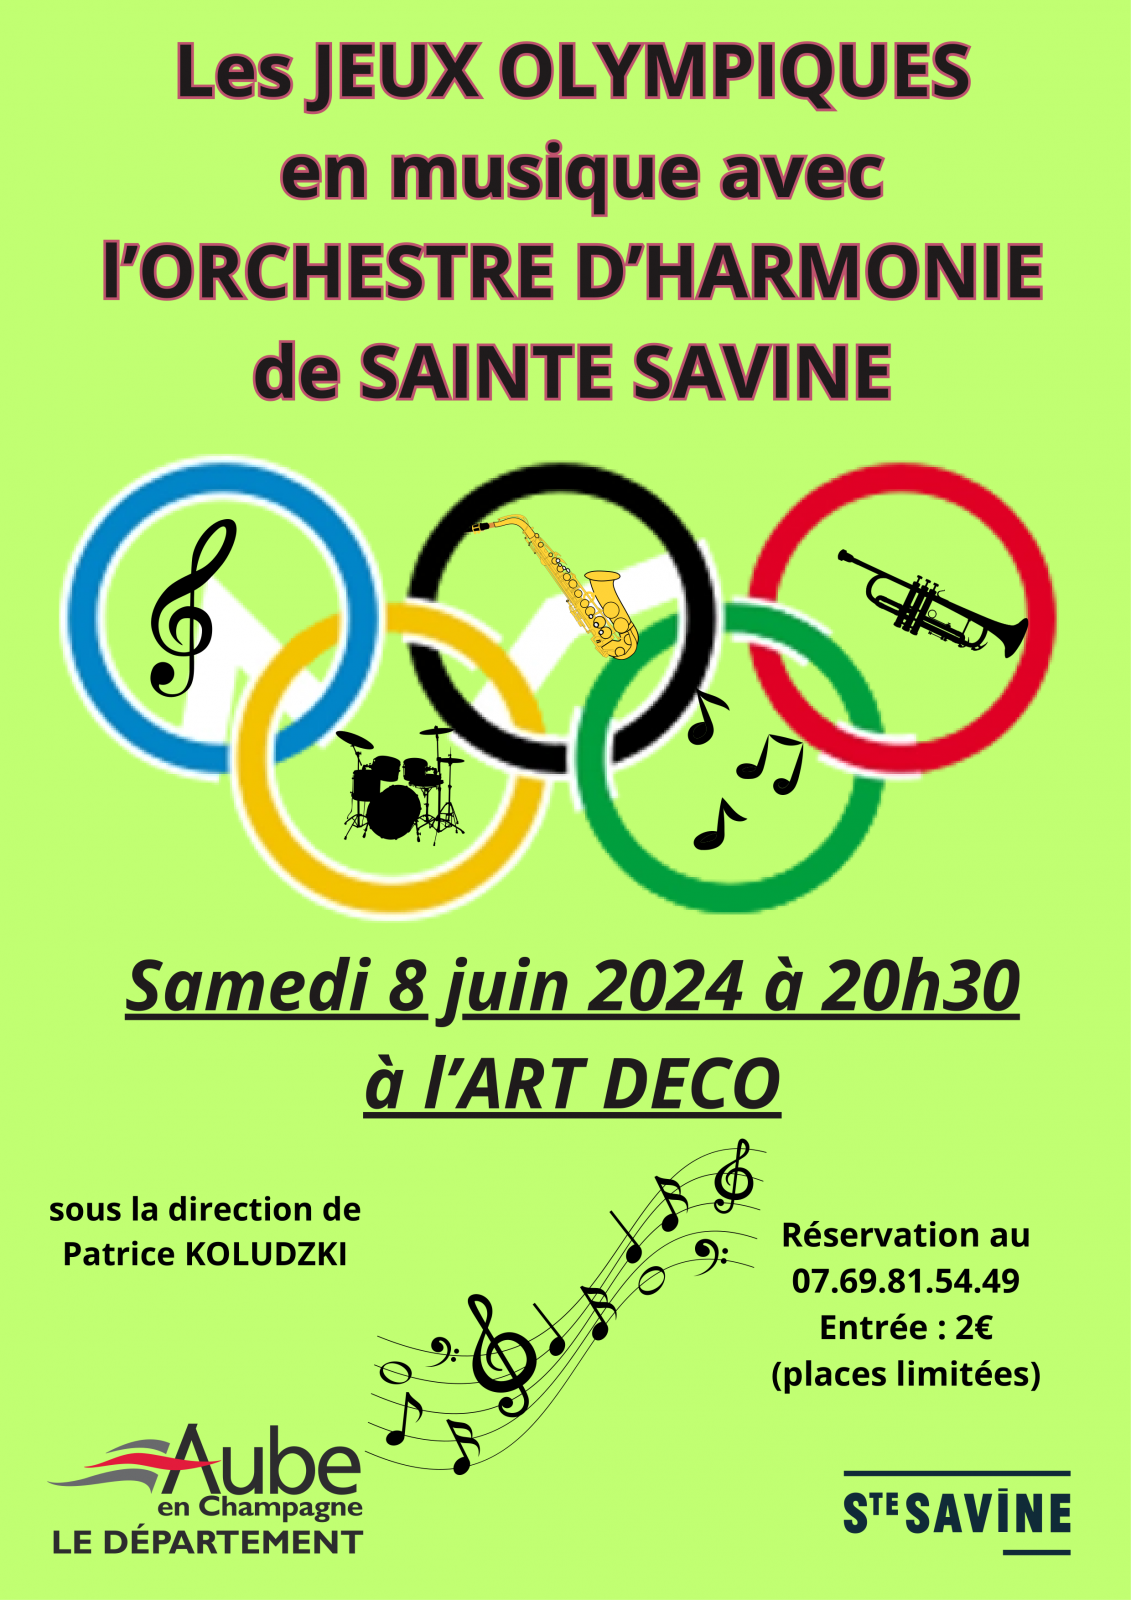 Concert Jeux Olympiques Le 8 juin 2024